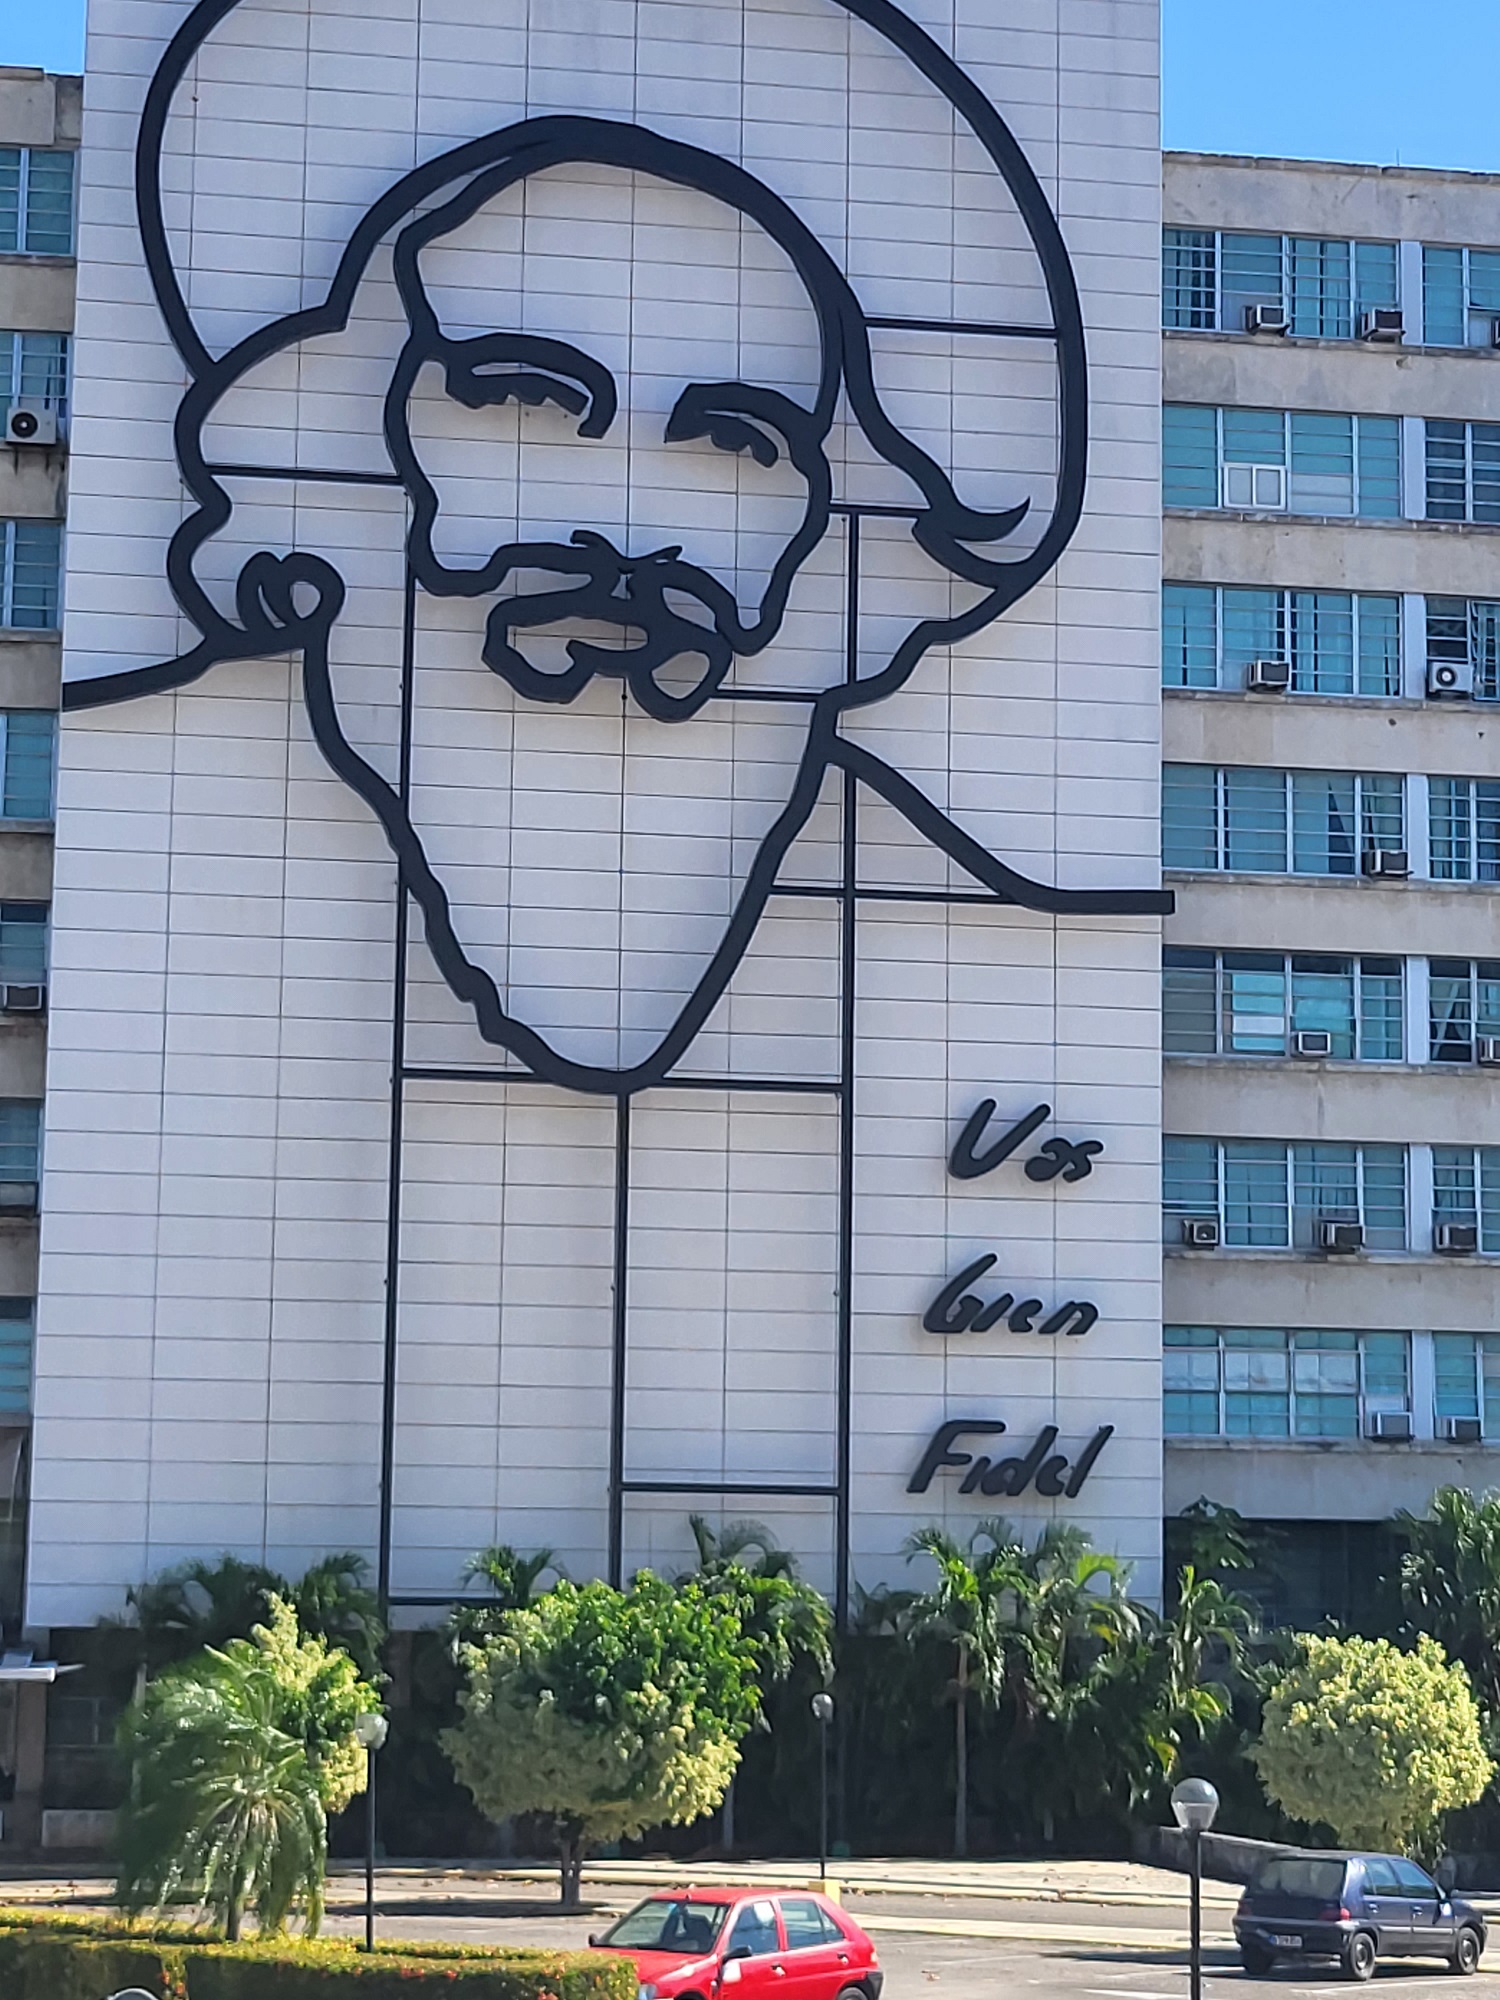 Bár mindenki azt hiszi, hogy ő Fidel, de nem. Ő Camilio Cienfuegos, aki szintén nagy szerepet játszott a forradalom győzelmében.